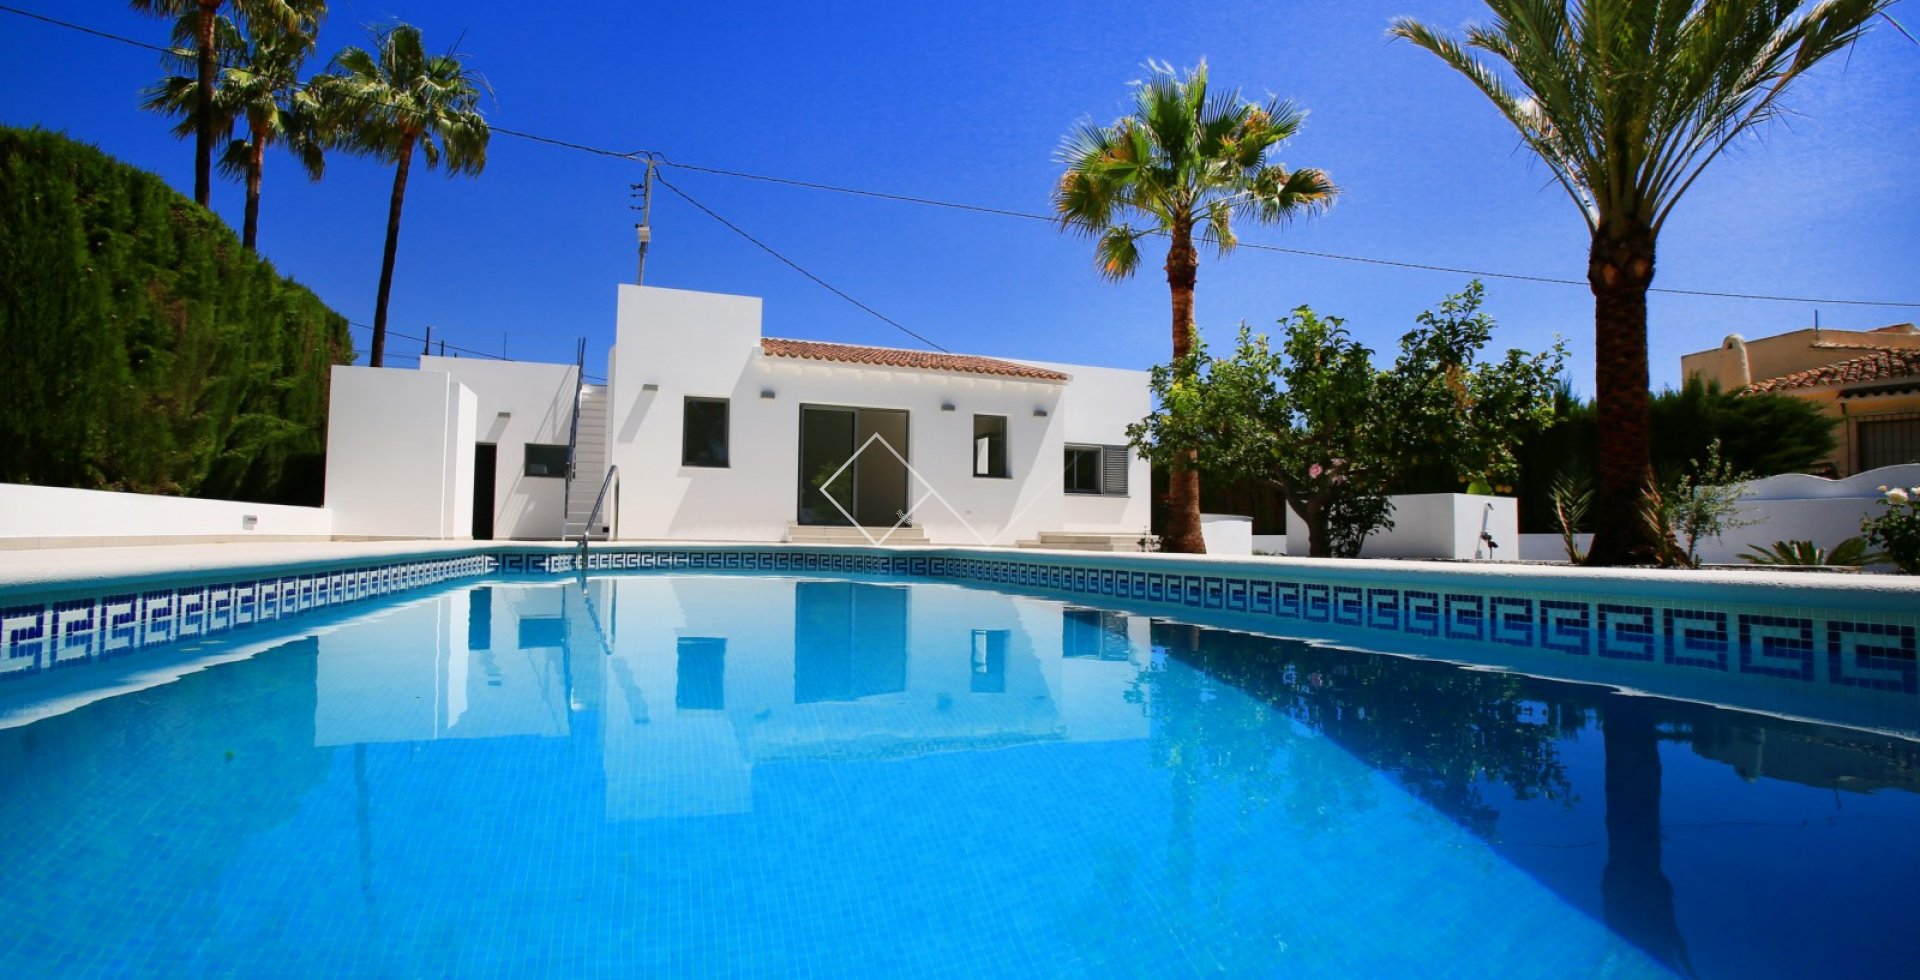 Pool Palmen - Renovierte Villa zu verkaufen in Benissa, 200m vom Strand entfernt